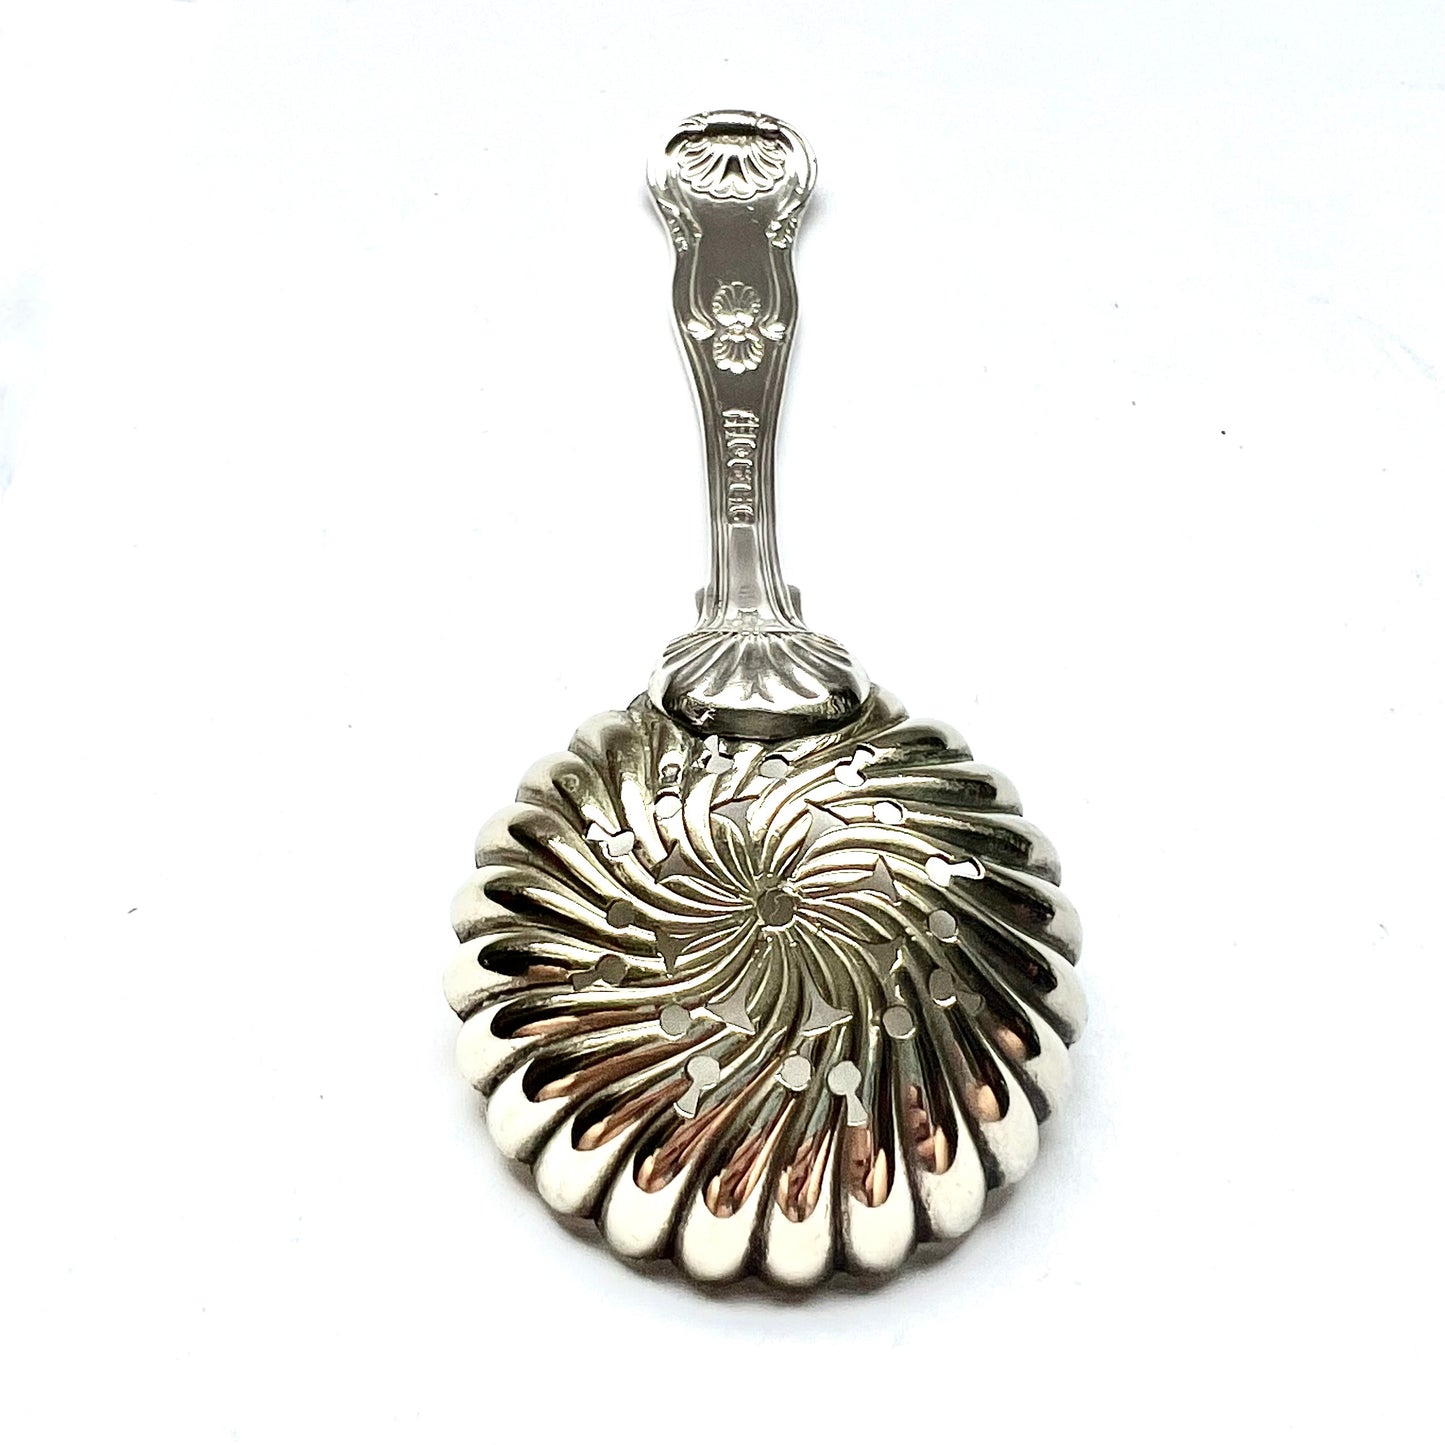 古董 19 世纪纯银乔治四世糖筛勺，带有伦敦标记，1827 年，莫里斯和迈克尔·伊曼纽尔 (Morris &amp; Michael Emanuel) 制造。